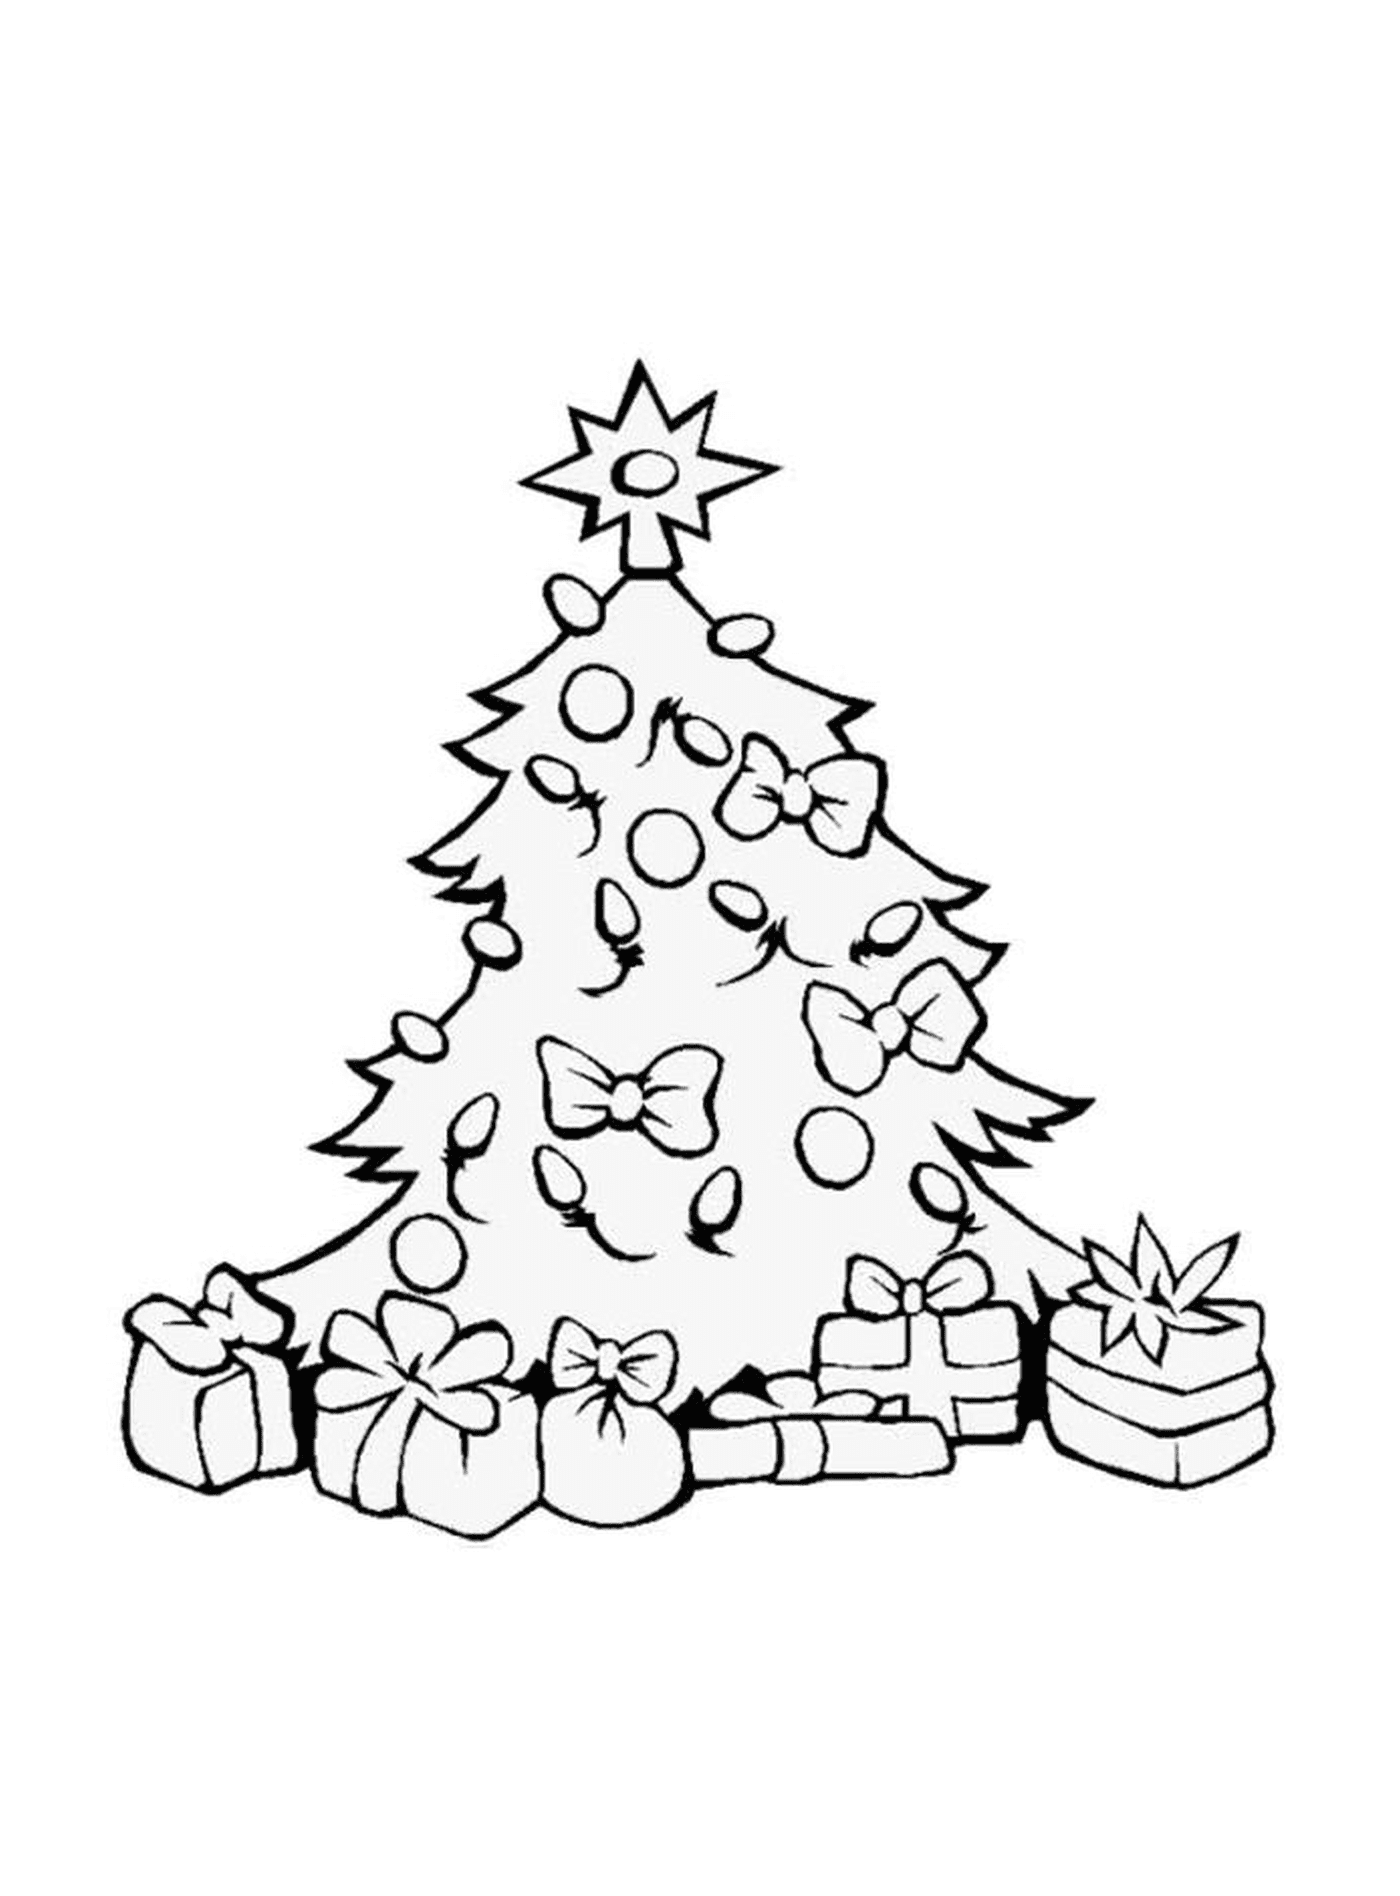  क्रिसमस का पेड़ जिसमें ढेर सारा दान दिए जाते हैं 